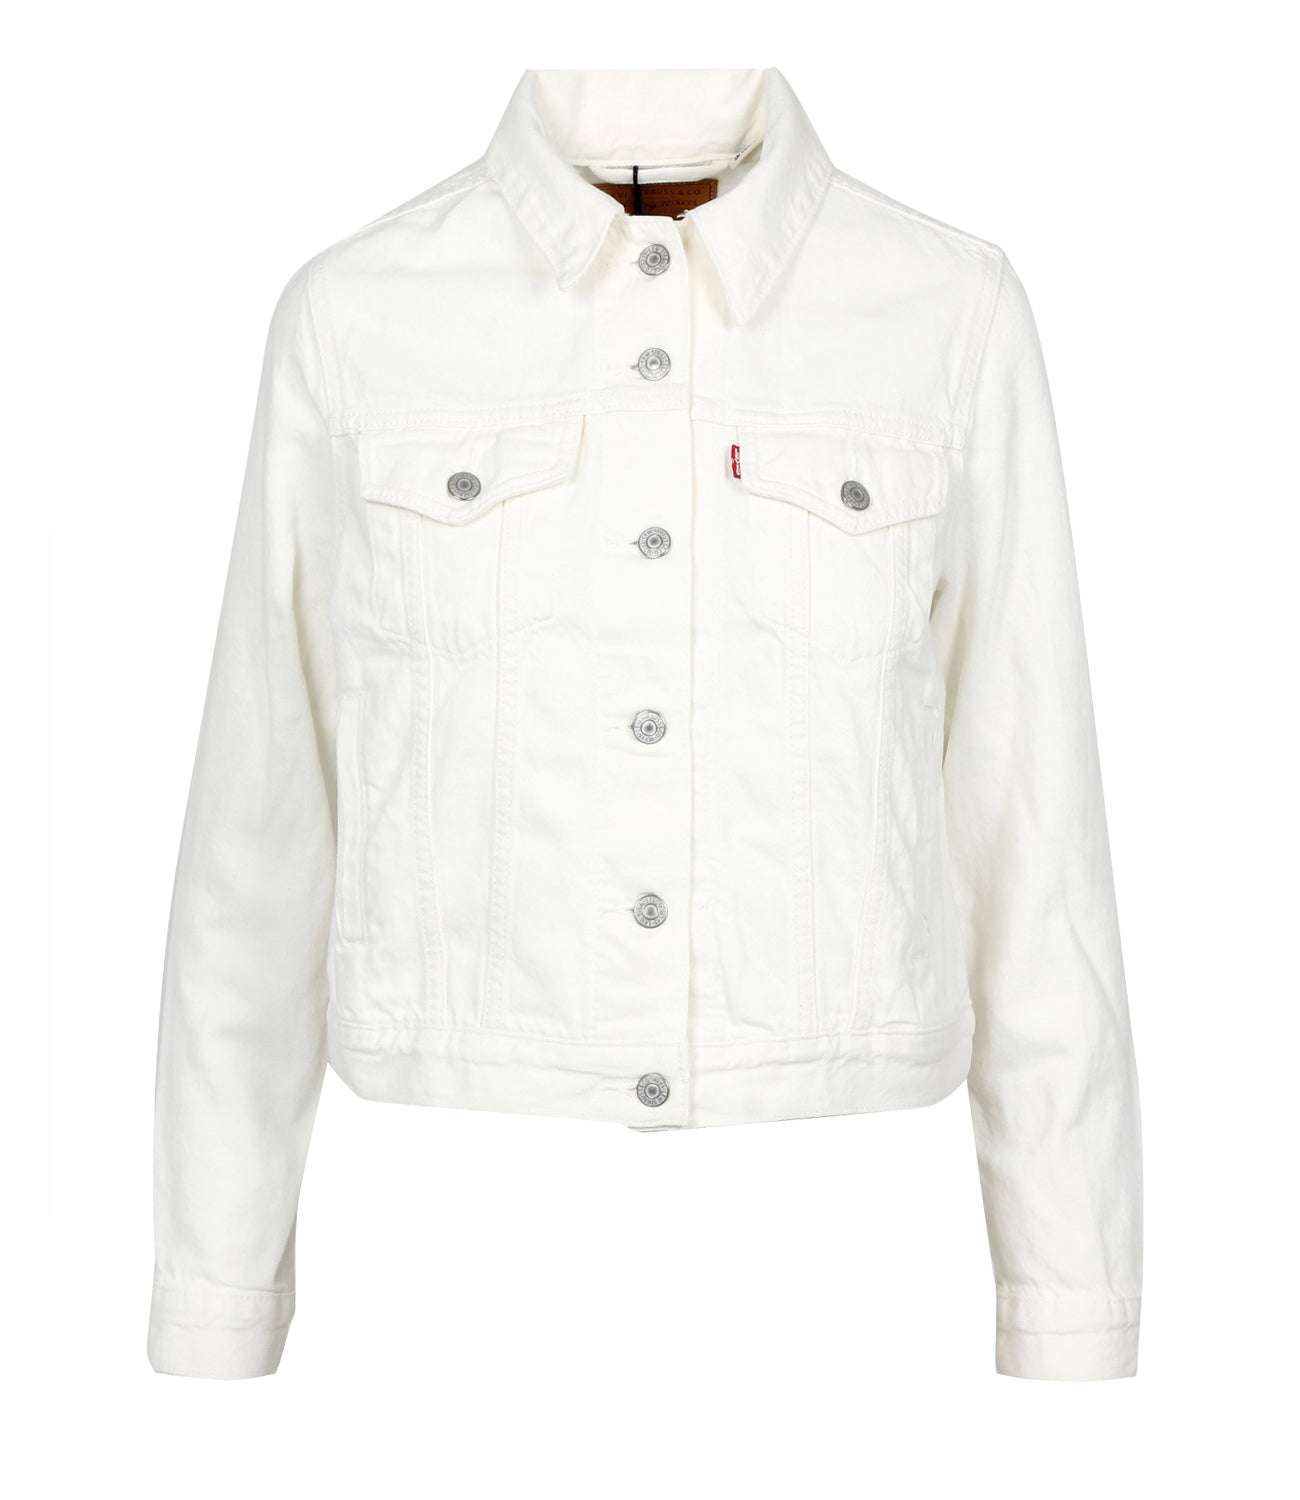 Levis | Original Trucker Jacket Soft as Butter White